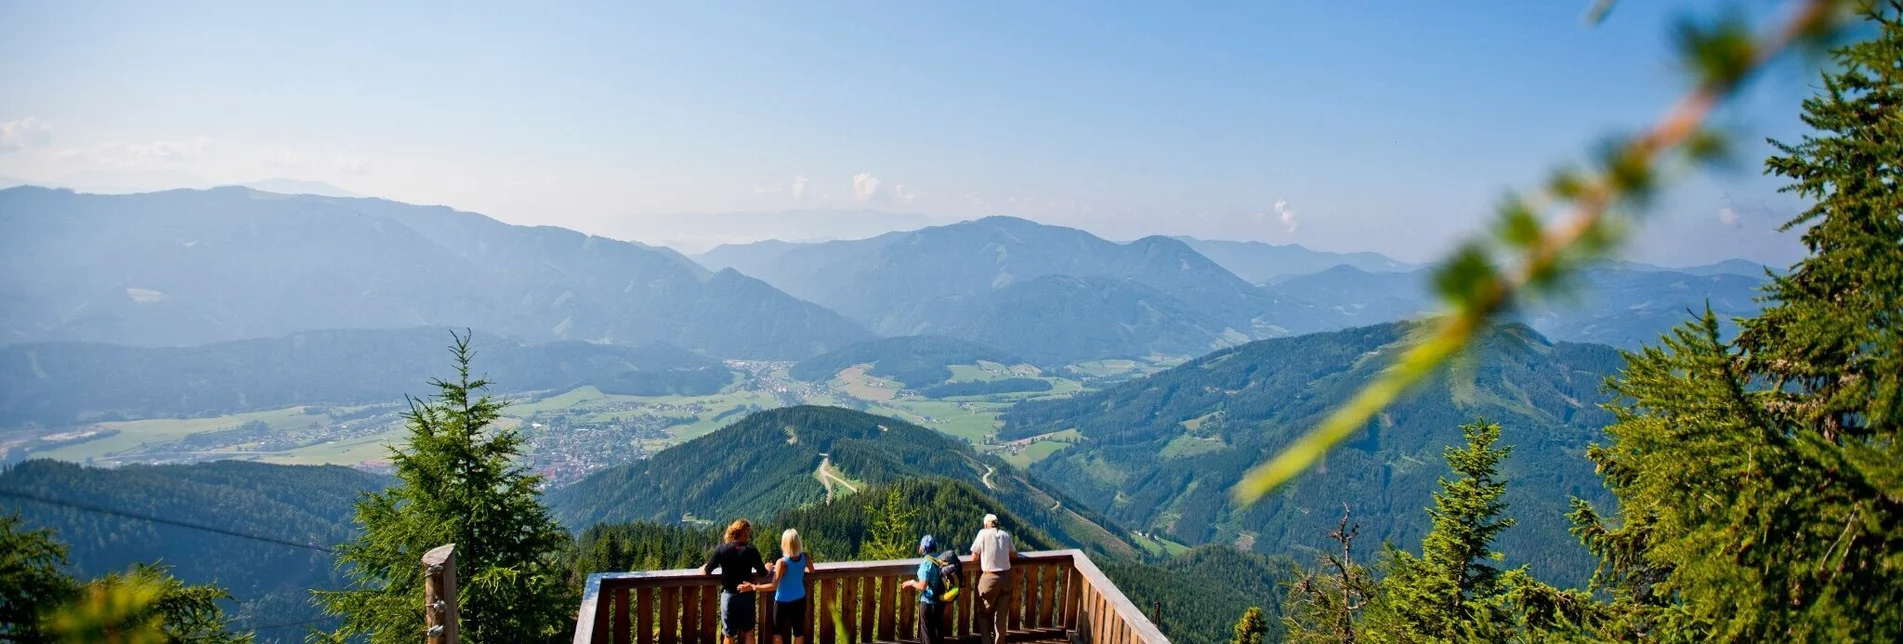 Hiking route Almenwanderung zu Gams und Edelweiss - Touren-Impression #1 | © Steiermark Tourismus